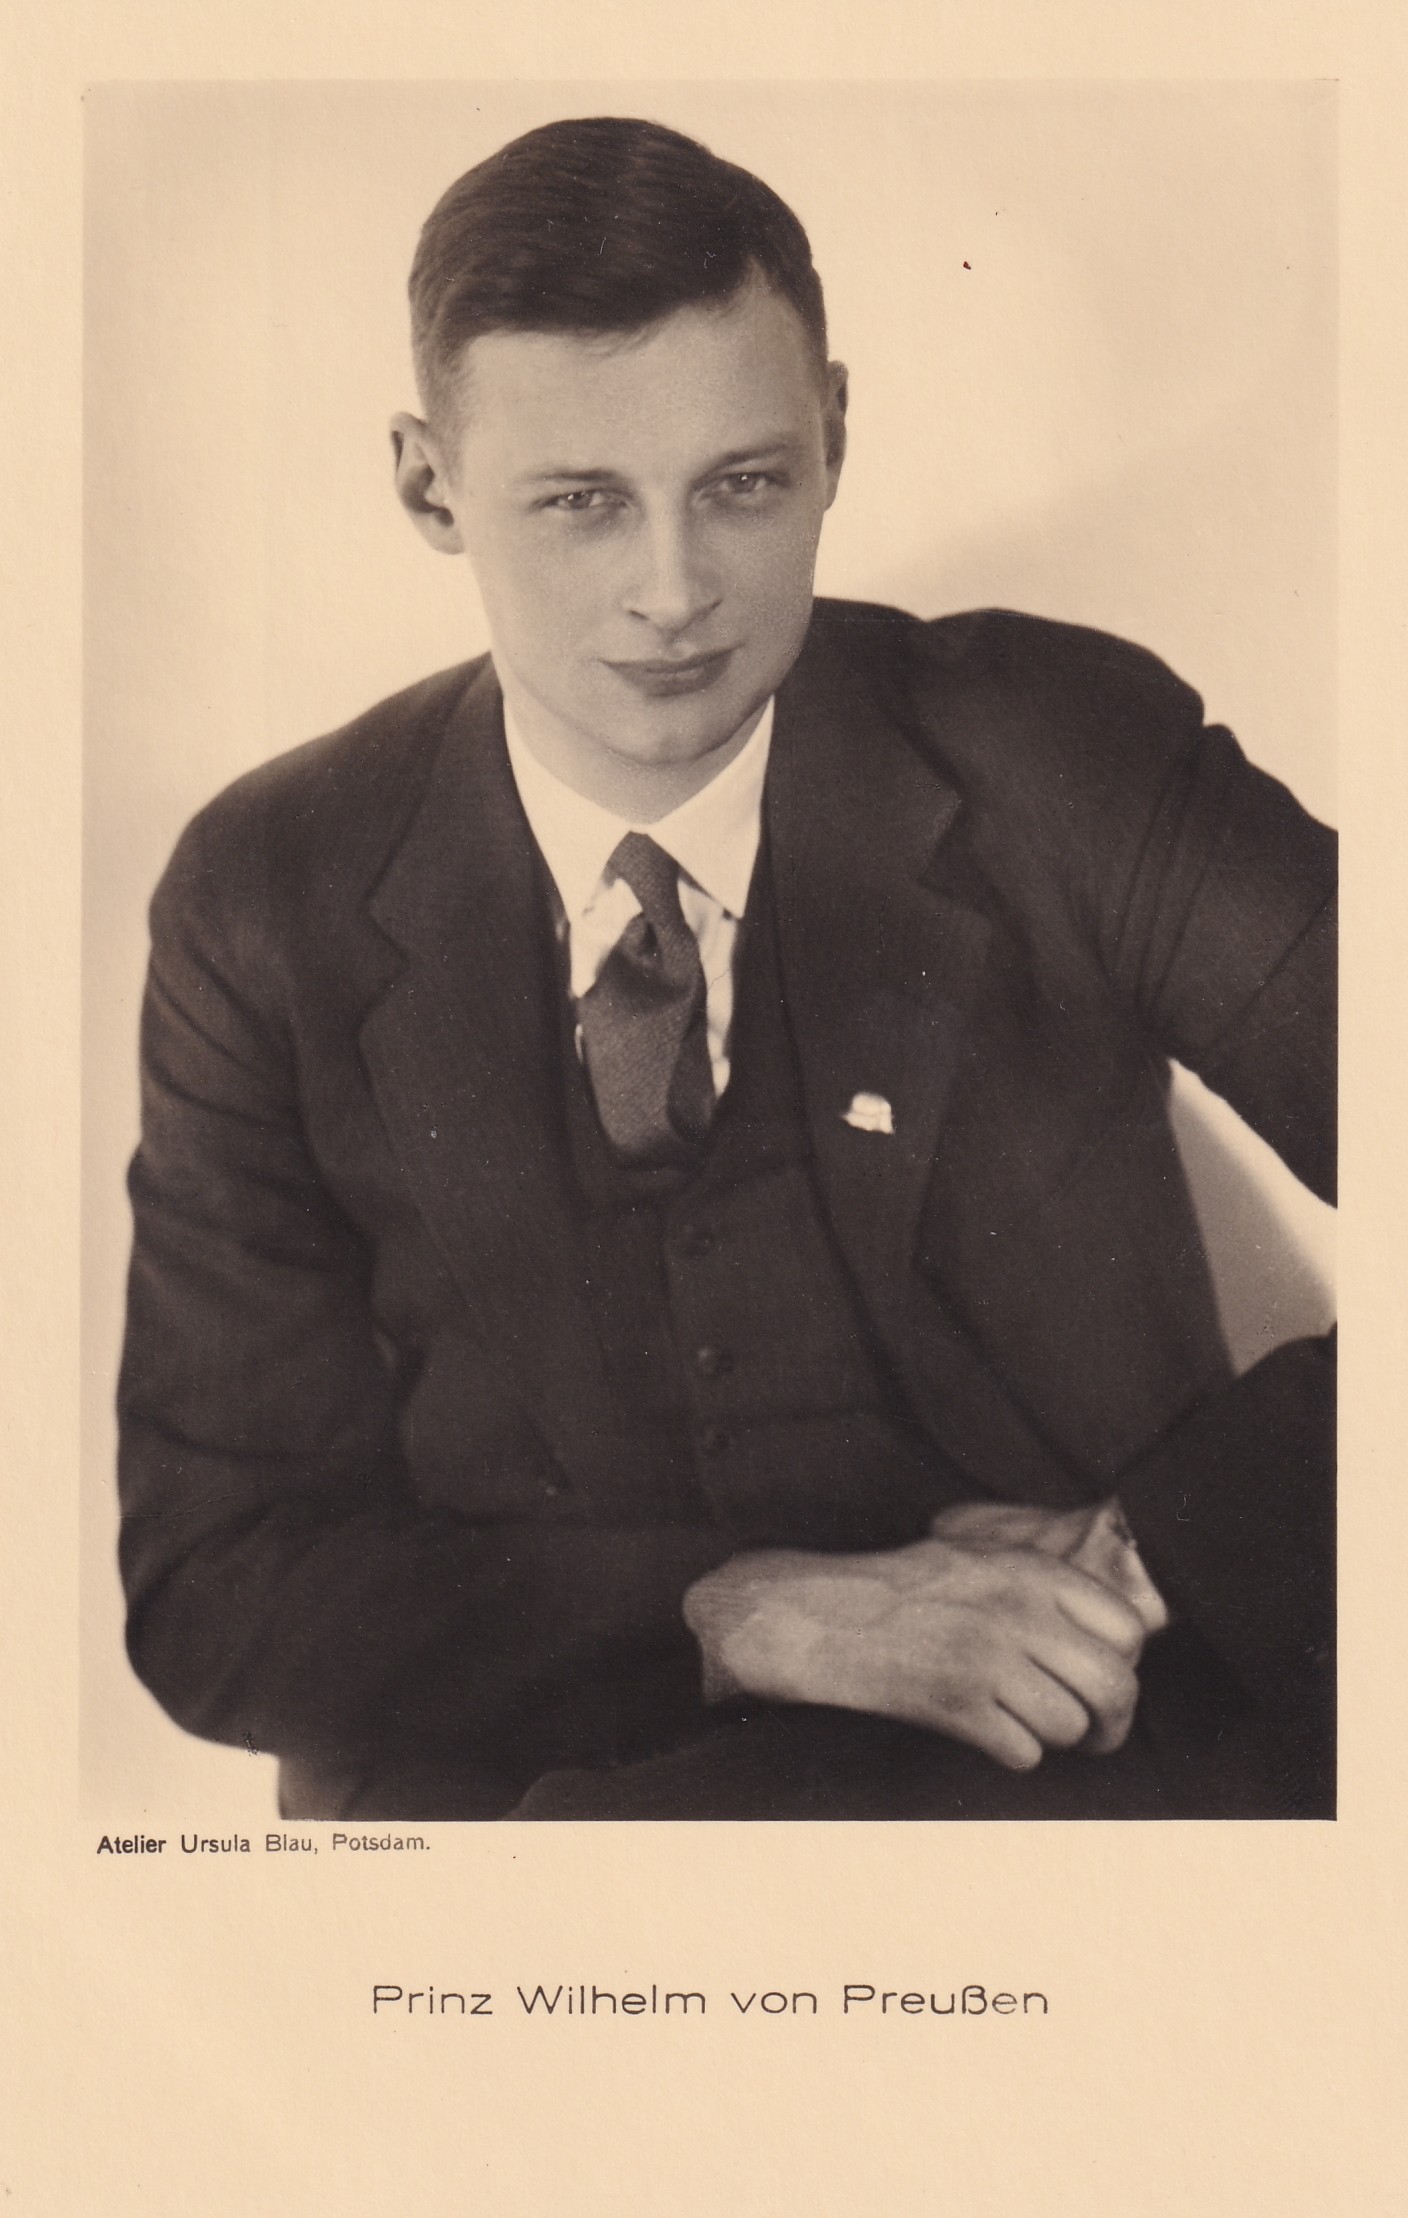 Bildpostkarte mit Foto des Prinzen Wilhelm von Preußen (1906-1940), 1932 (Schloß Wernigerode GmbH RR-F)